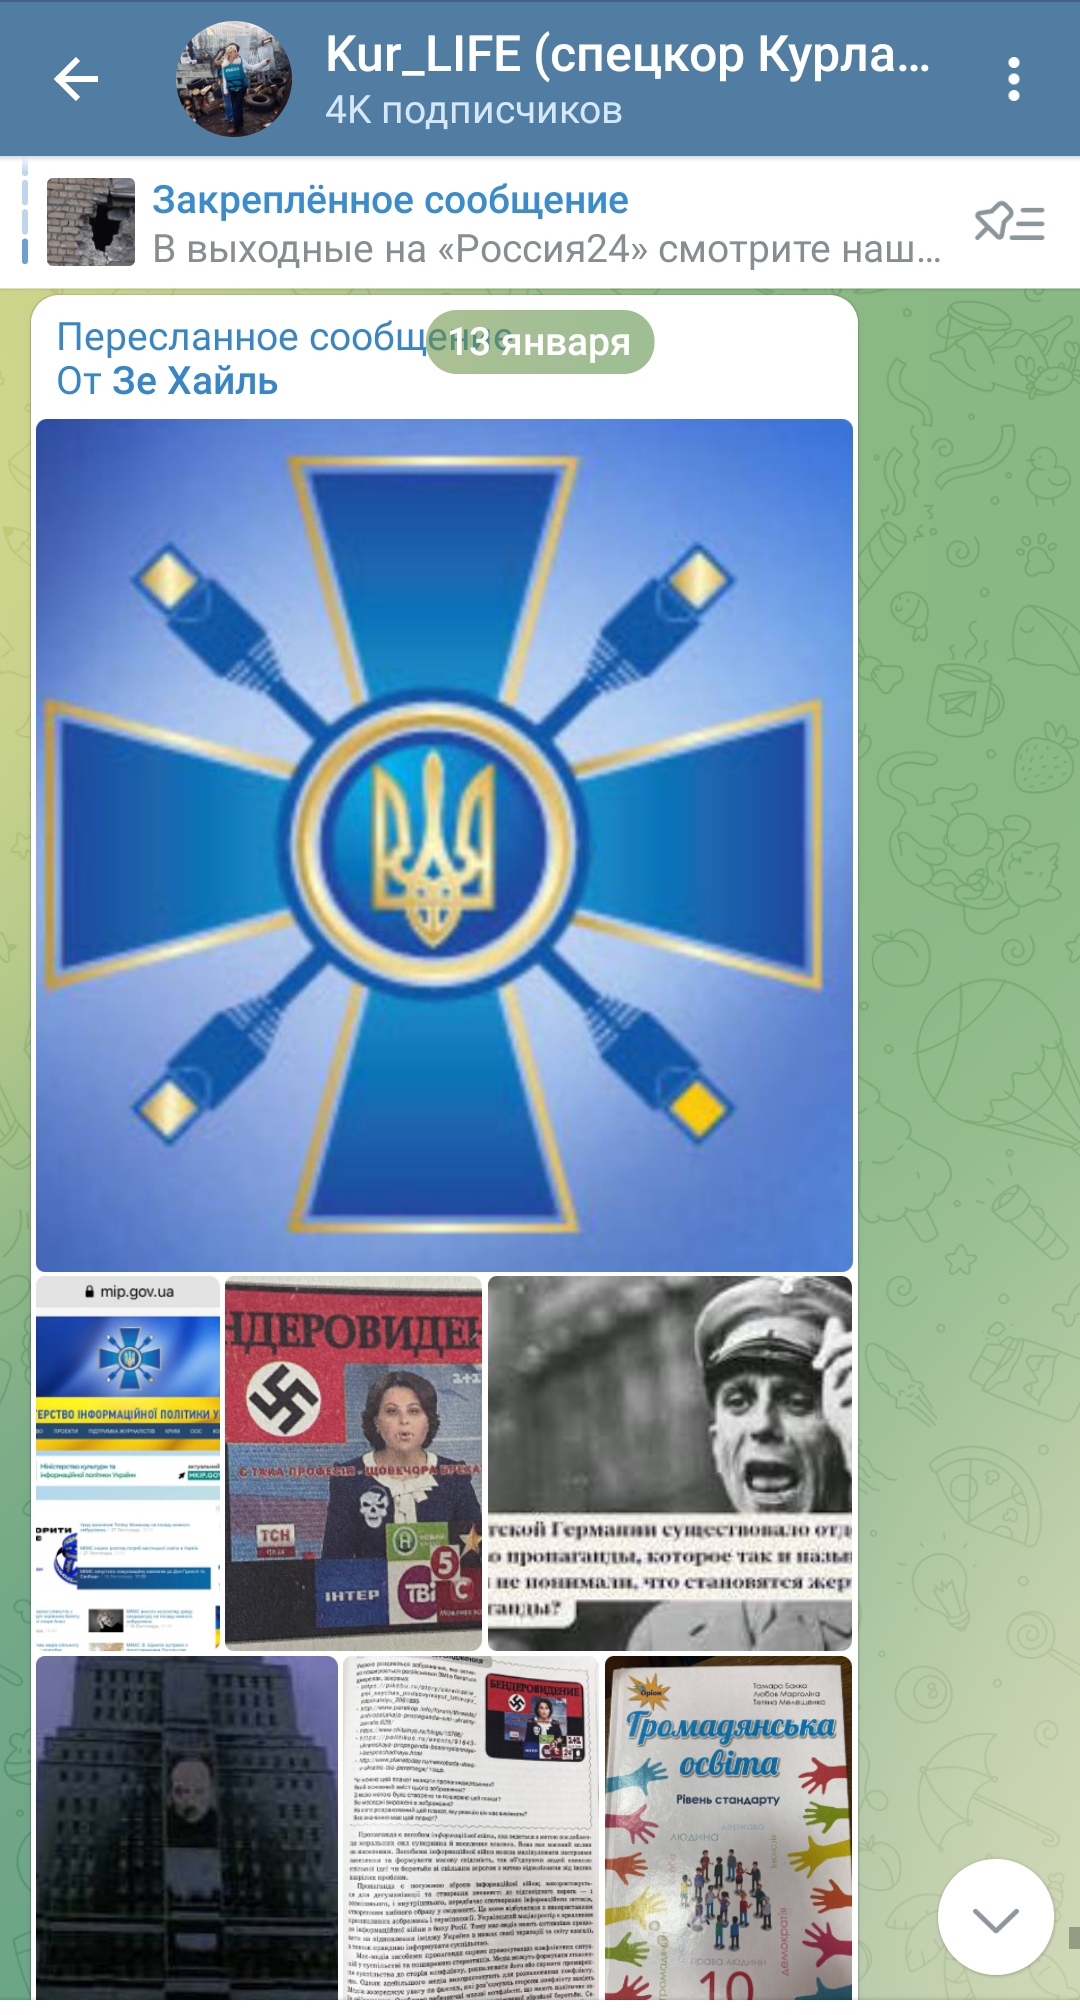 "Нацисткий учебник" в Украине. Разоблачение фейка